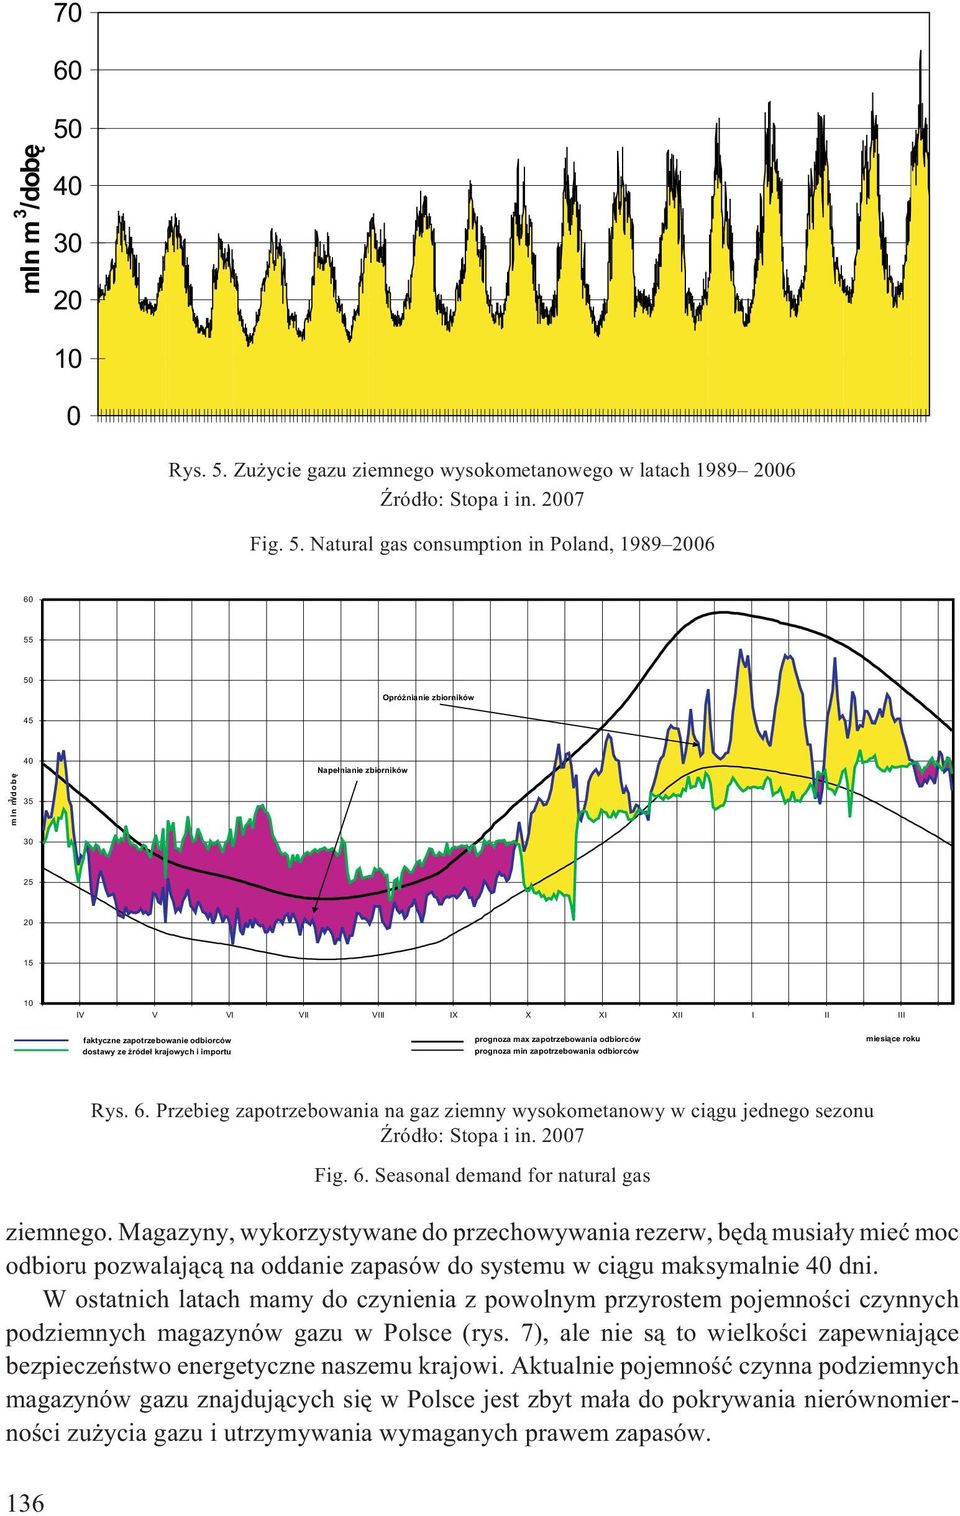 Zu ycie gazu ziemnego wysokometanowego w latach 1989 2006 ród³o: Stopa i in. 2007 Fig. 5.